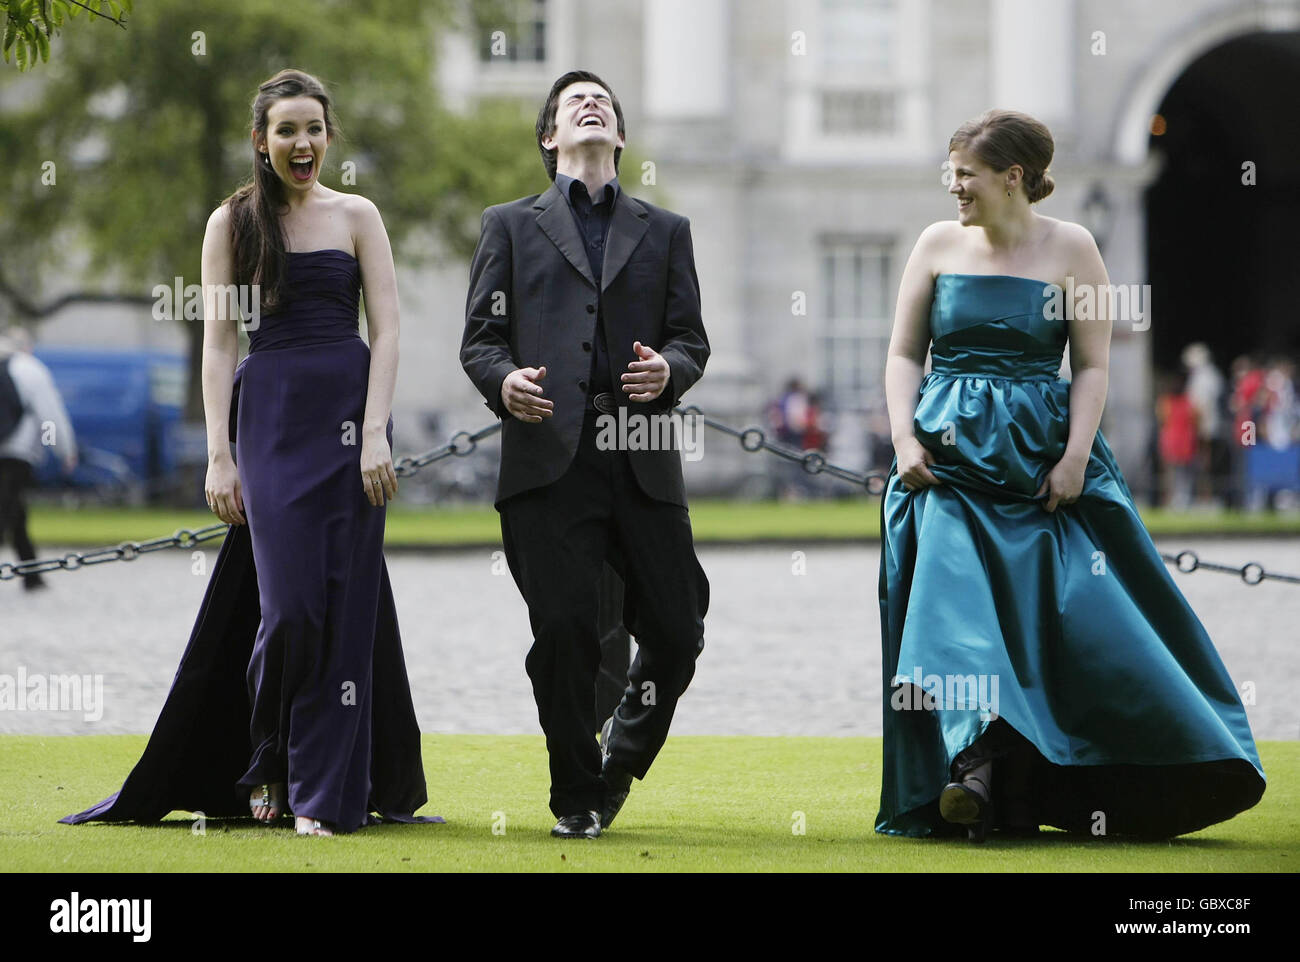 Chanteurs d'opéra (de gauche à droite) Rachel Kelly, Dean Power et Chloe Hilton de la compagnie de théâtre d'opéra lors du lancement d'un concert d'opéra caritatif en faveur de la communauté Simon au Trinity College de Dublin. Banque D'Images